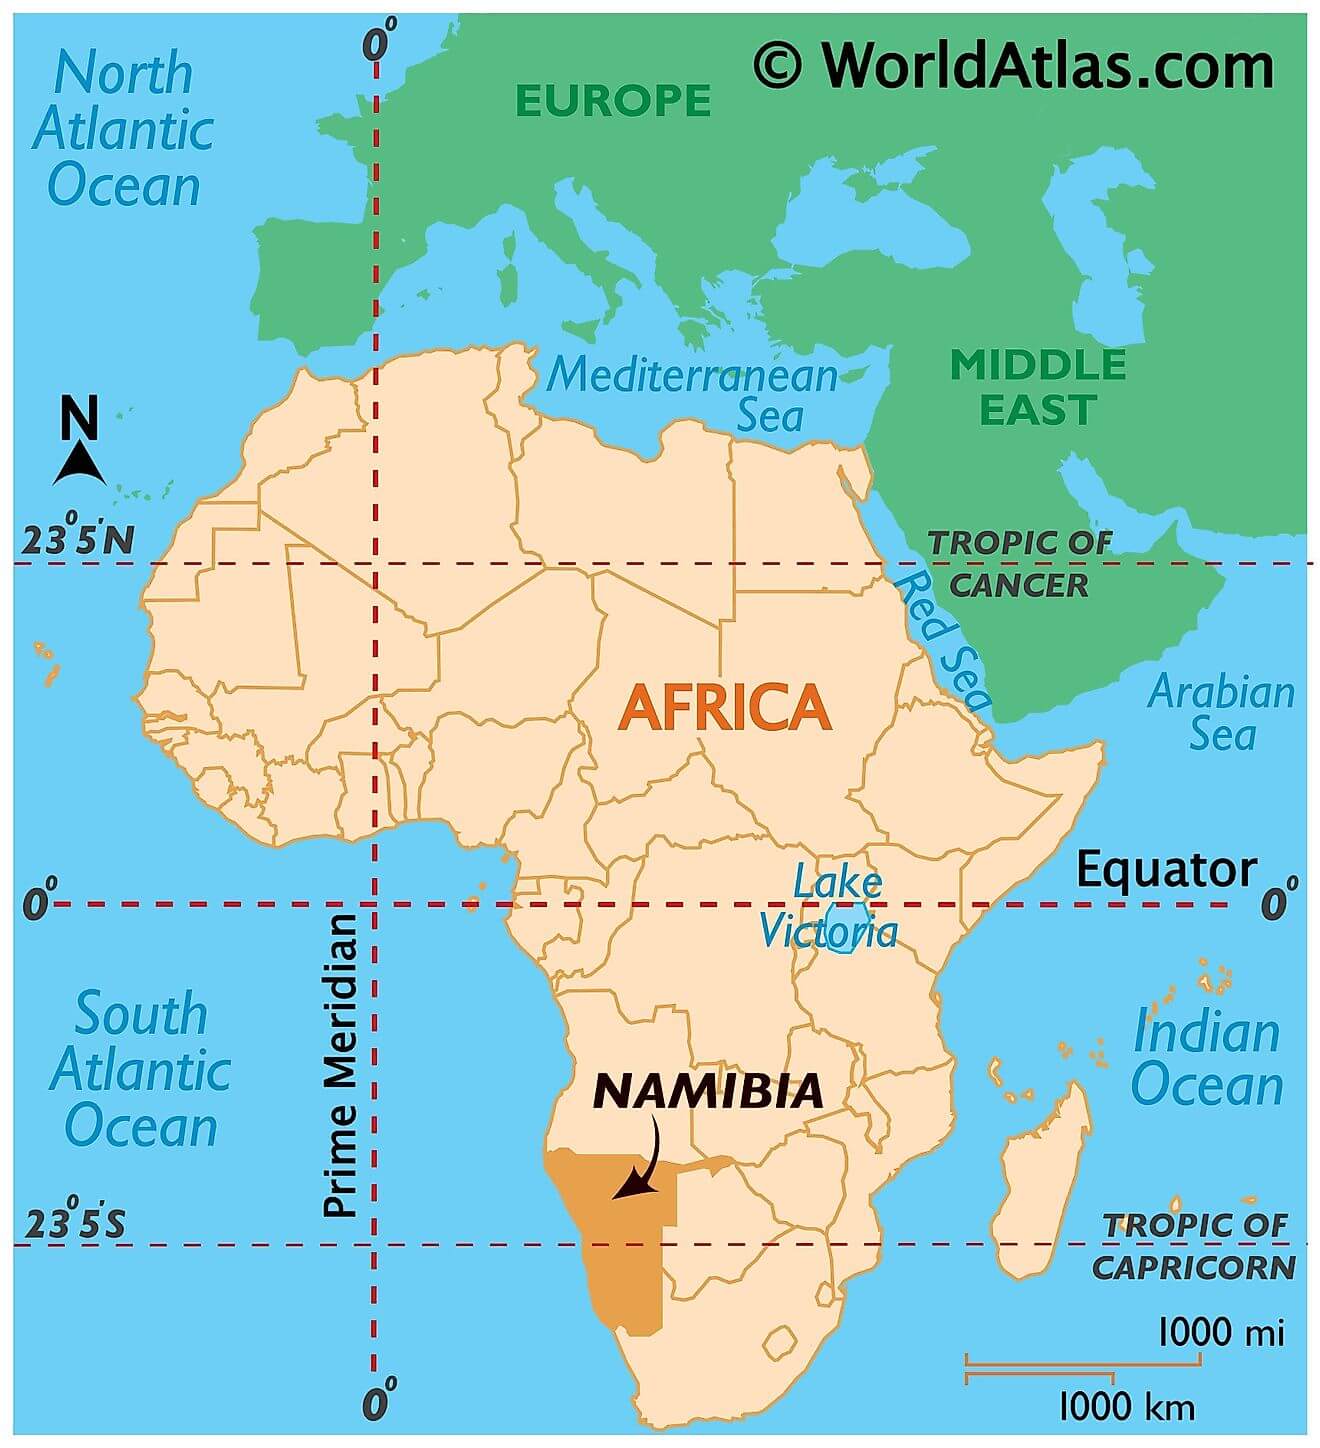 Namibia ở đâu?